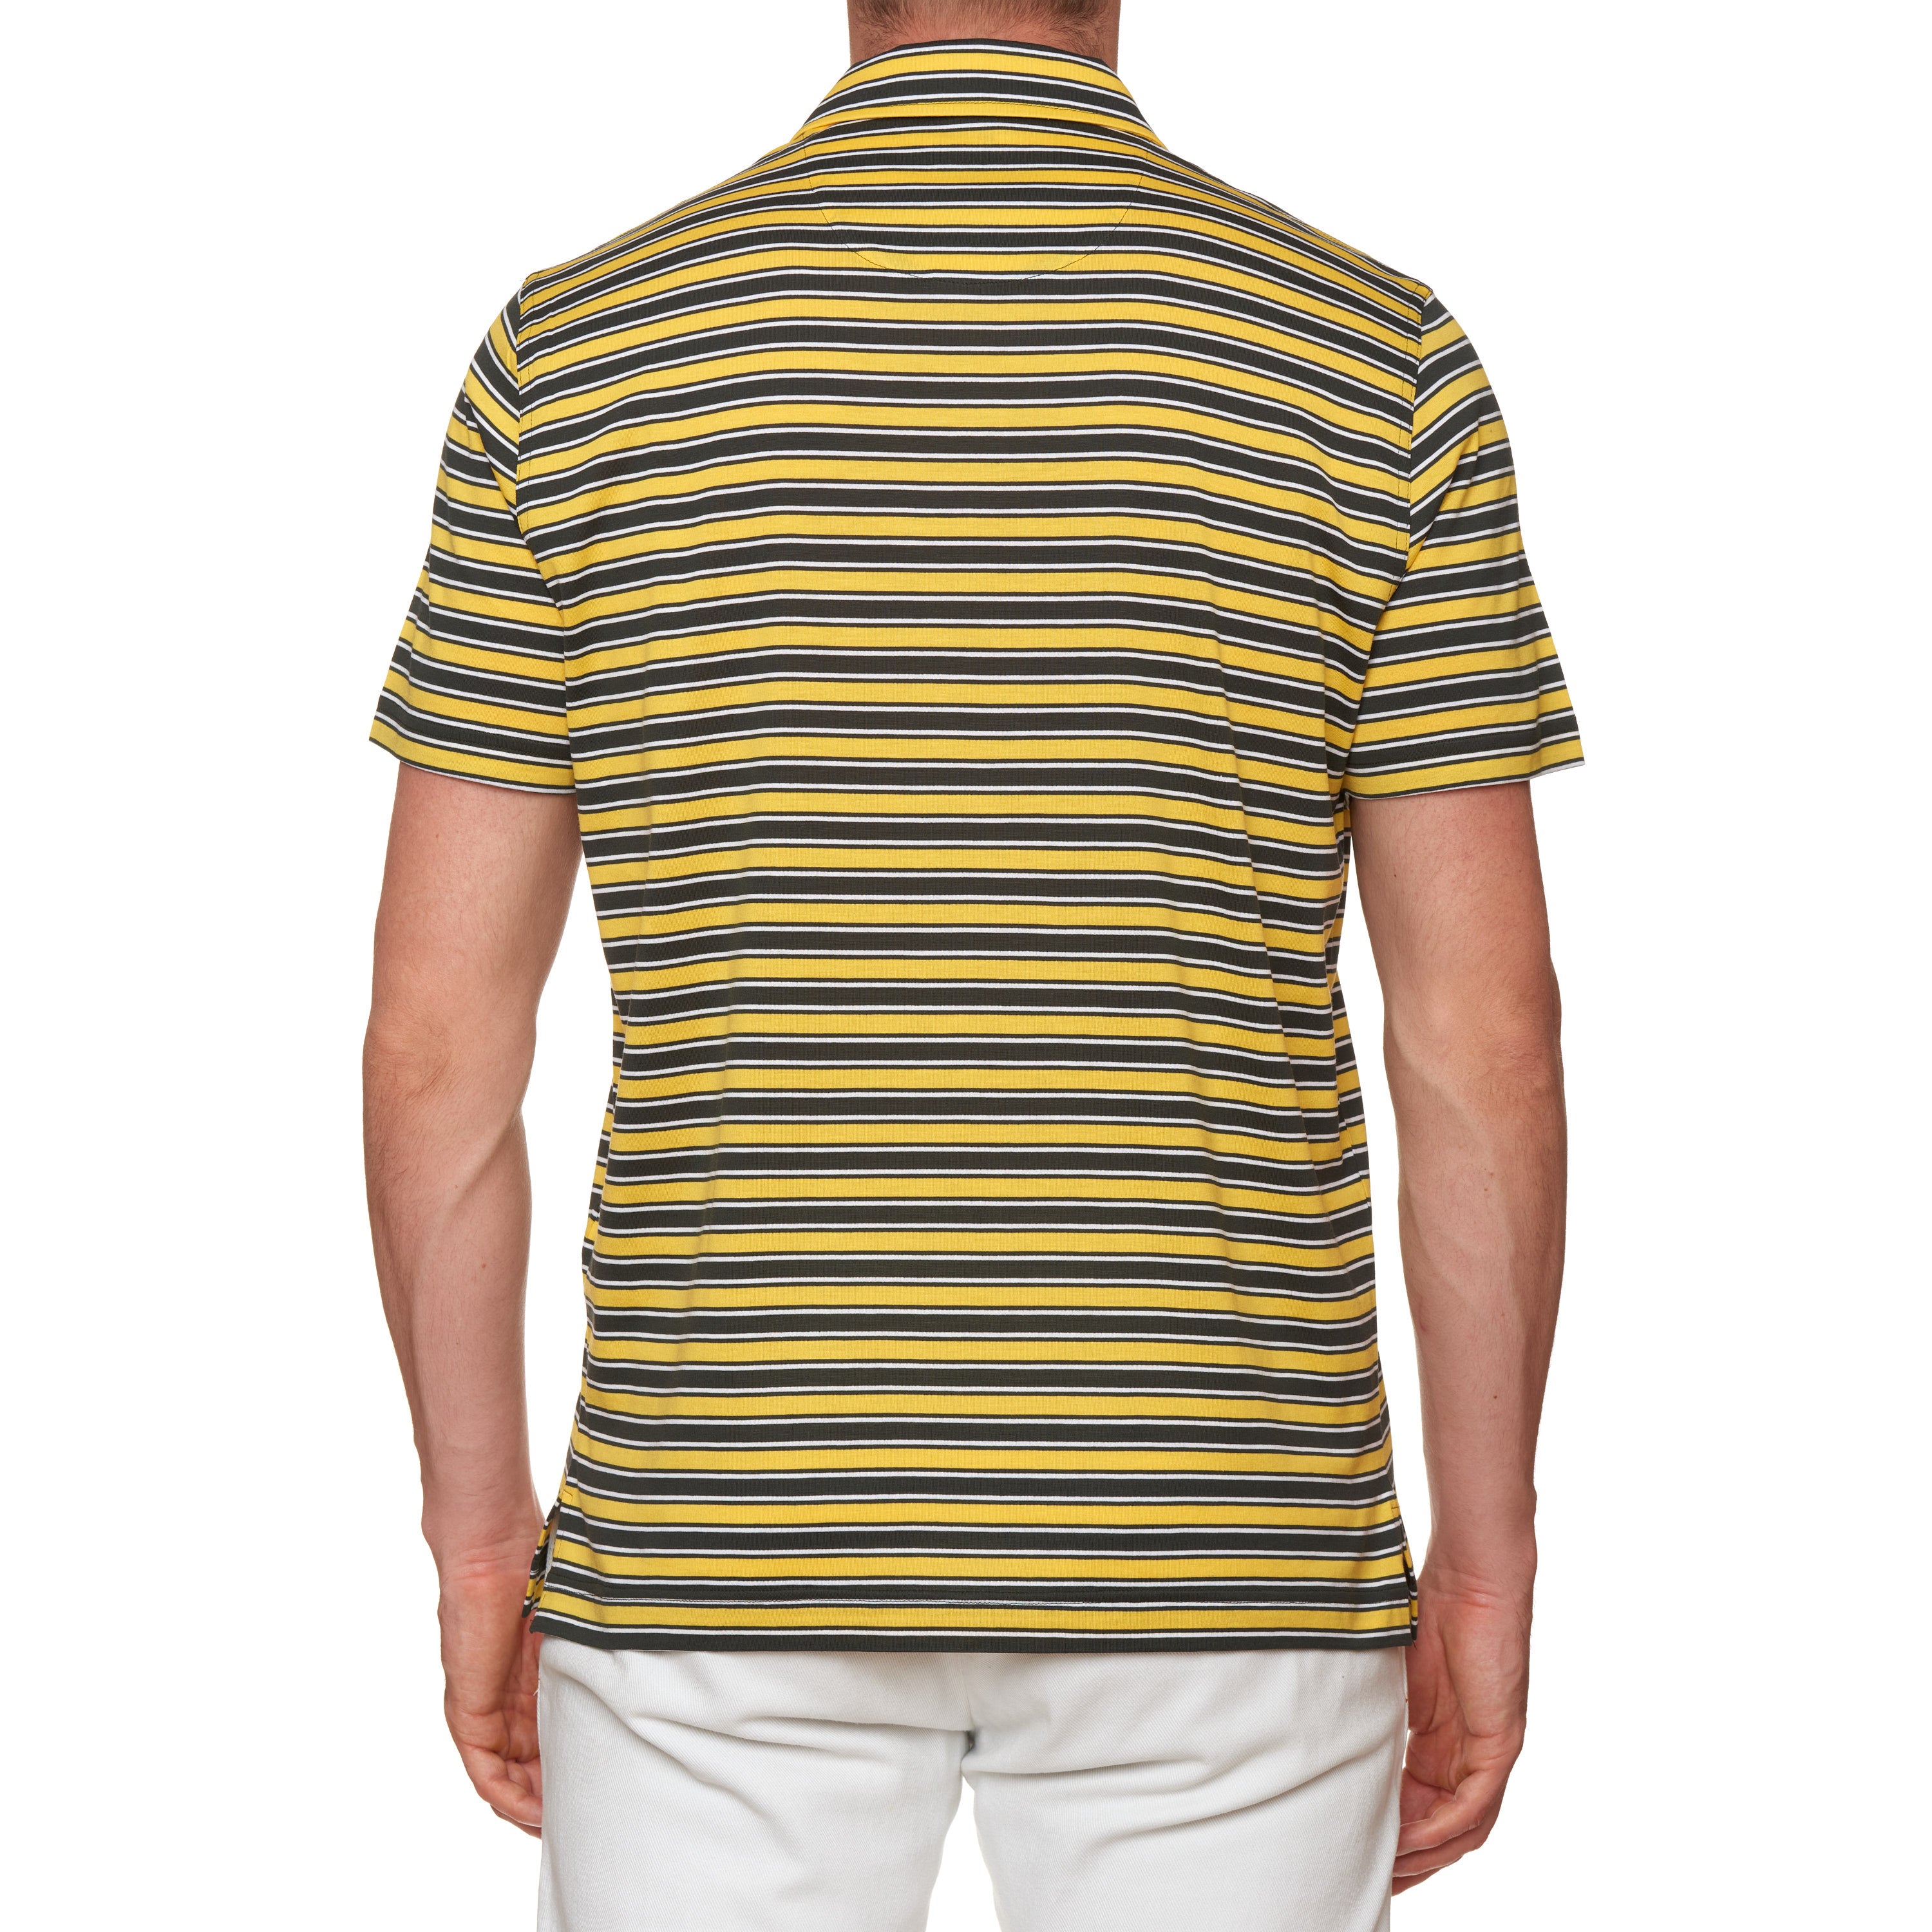 FEDELI "Florida" Black-Yellow-White Striped Cotton Jersey Polo Shirt NEW FEDELI